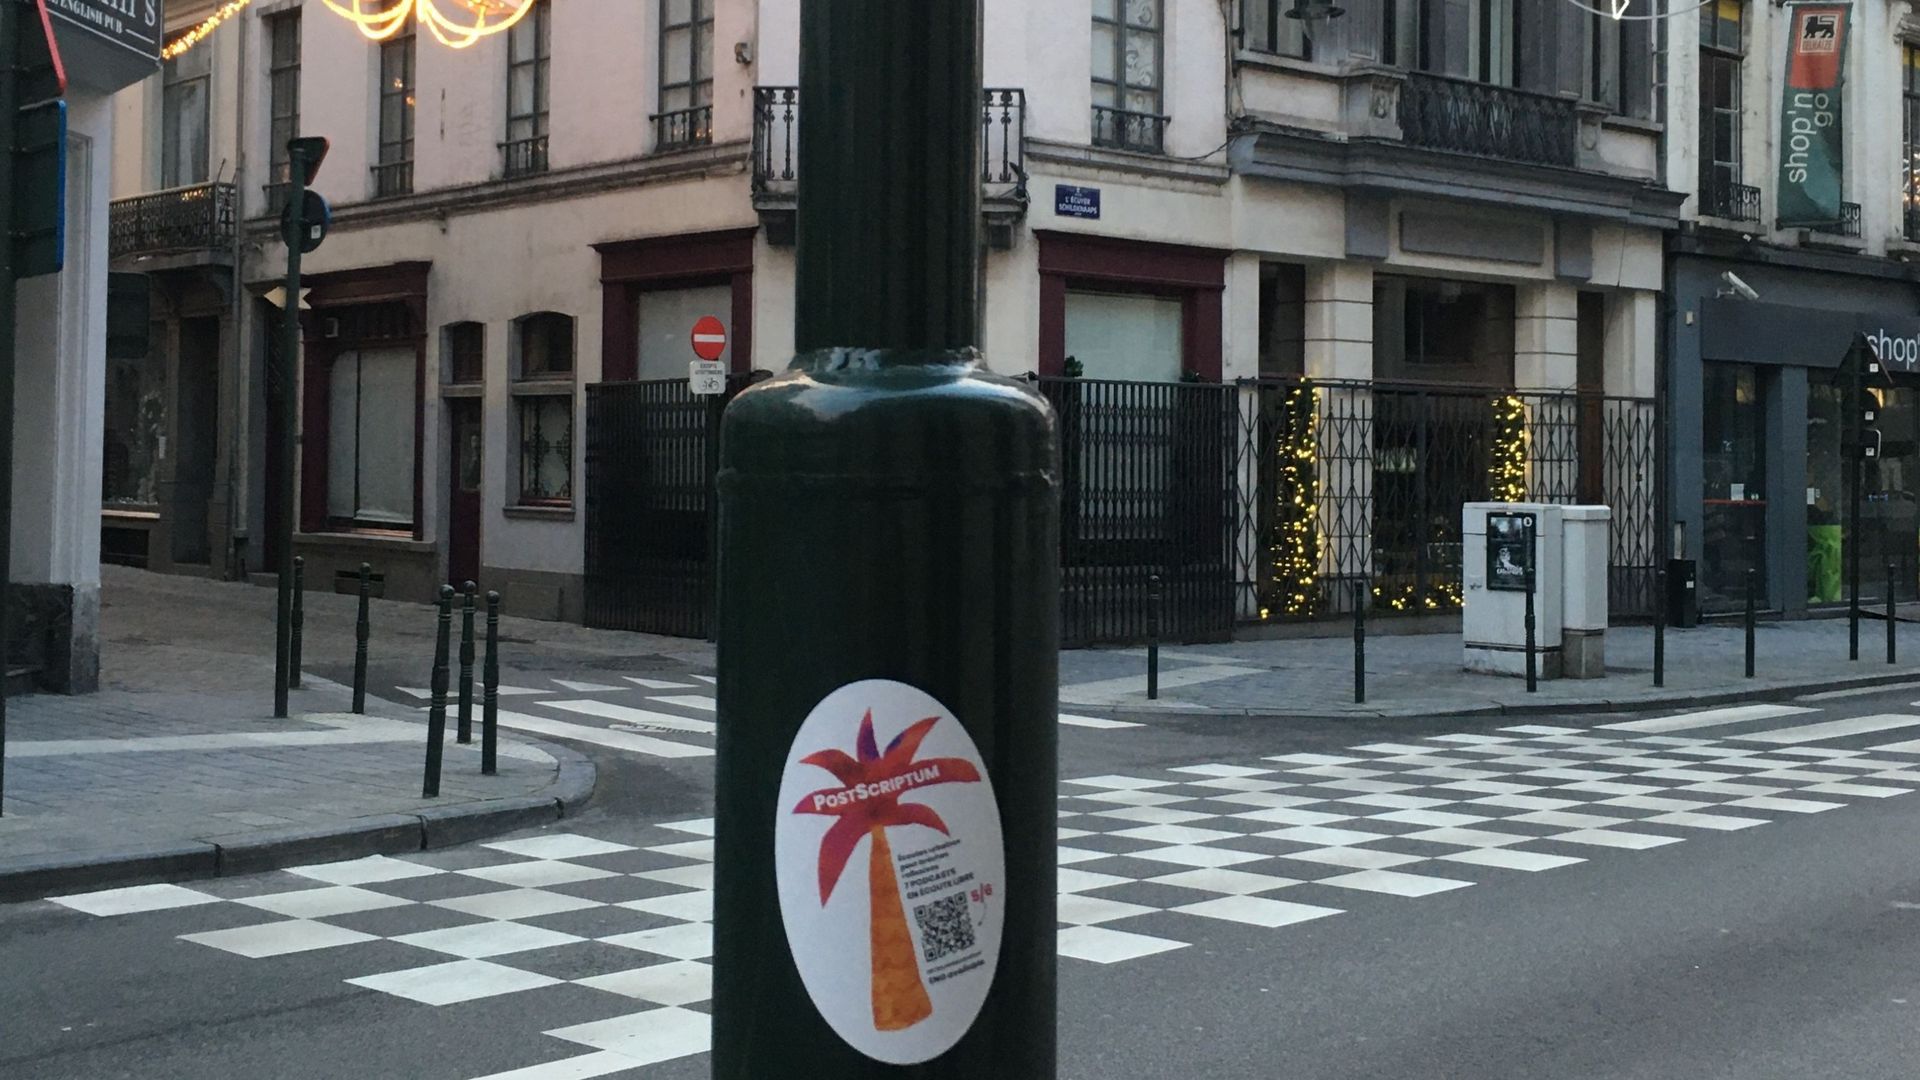 Des autocollants en forme de cocotiers colorés pour amener des bulles de culture dans Bruxelles